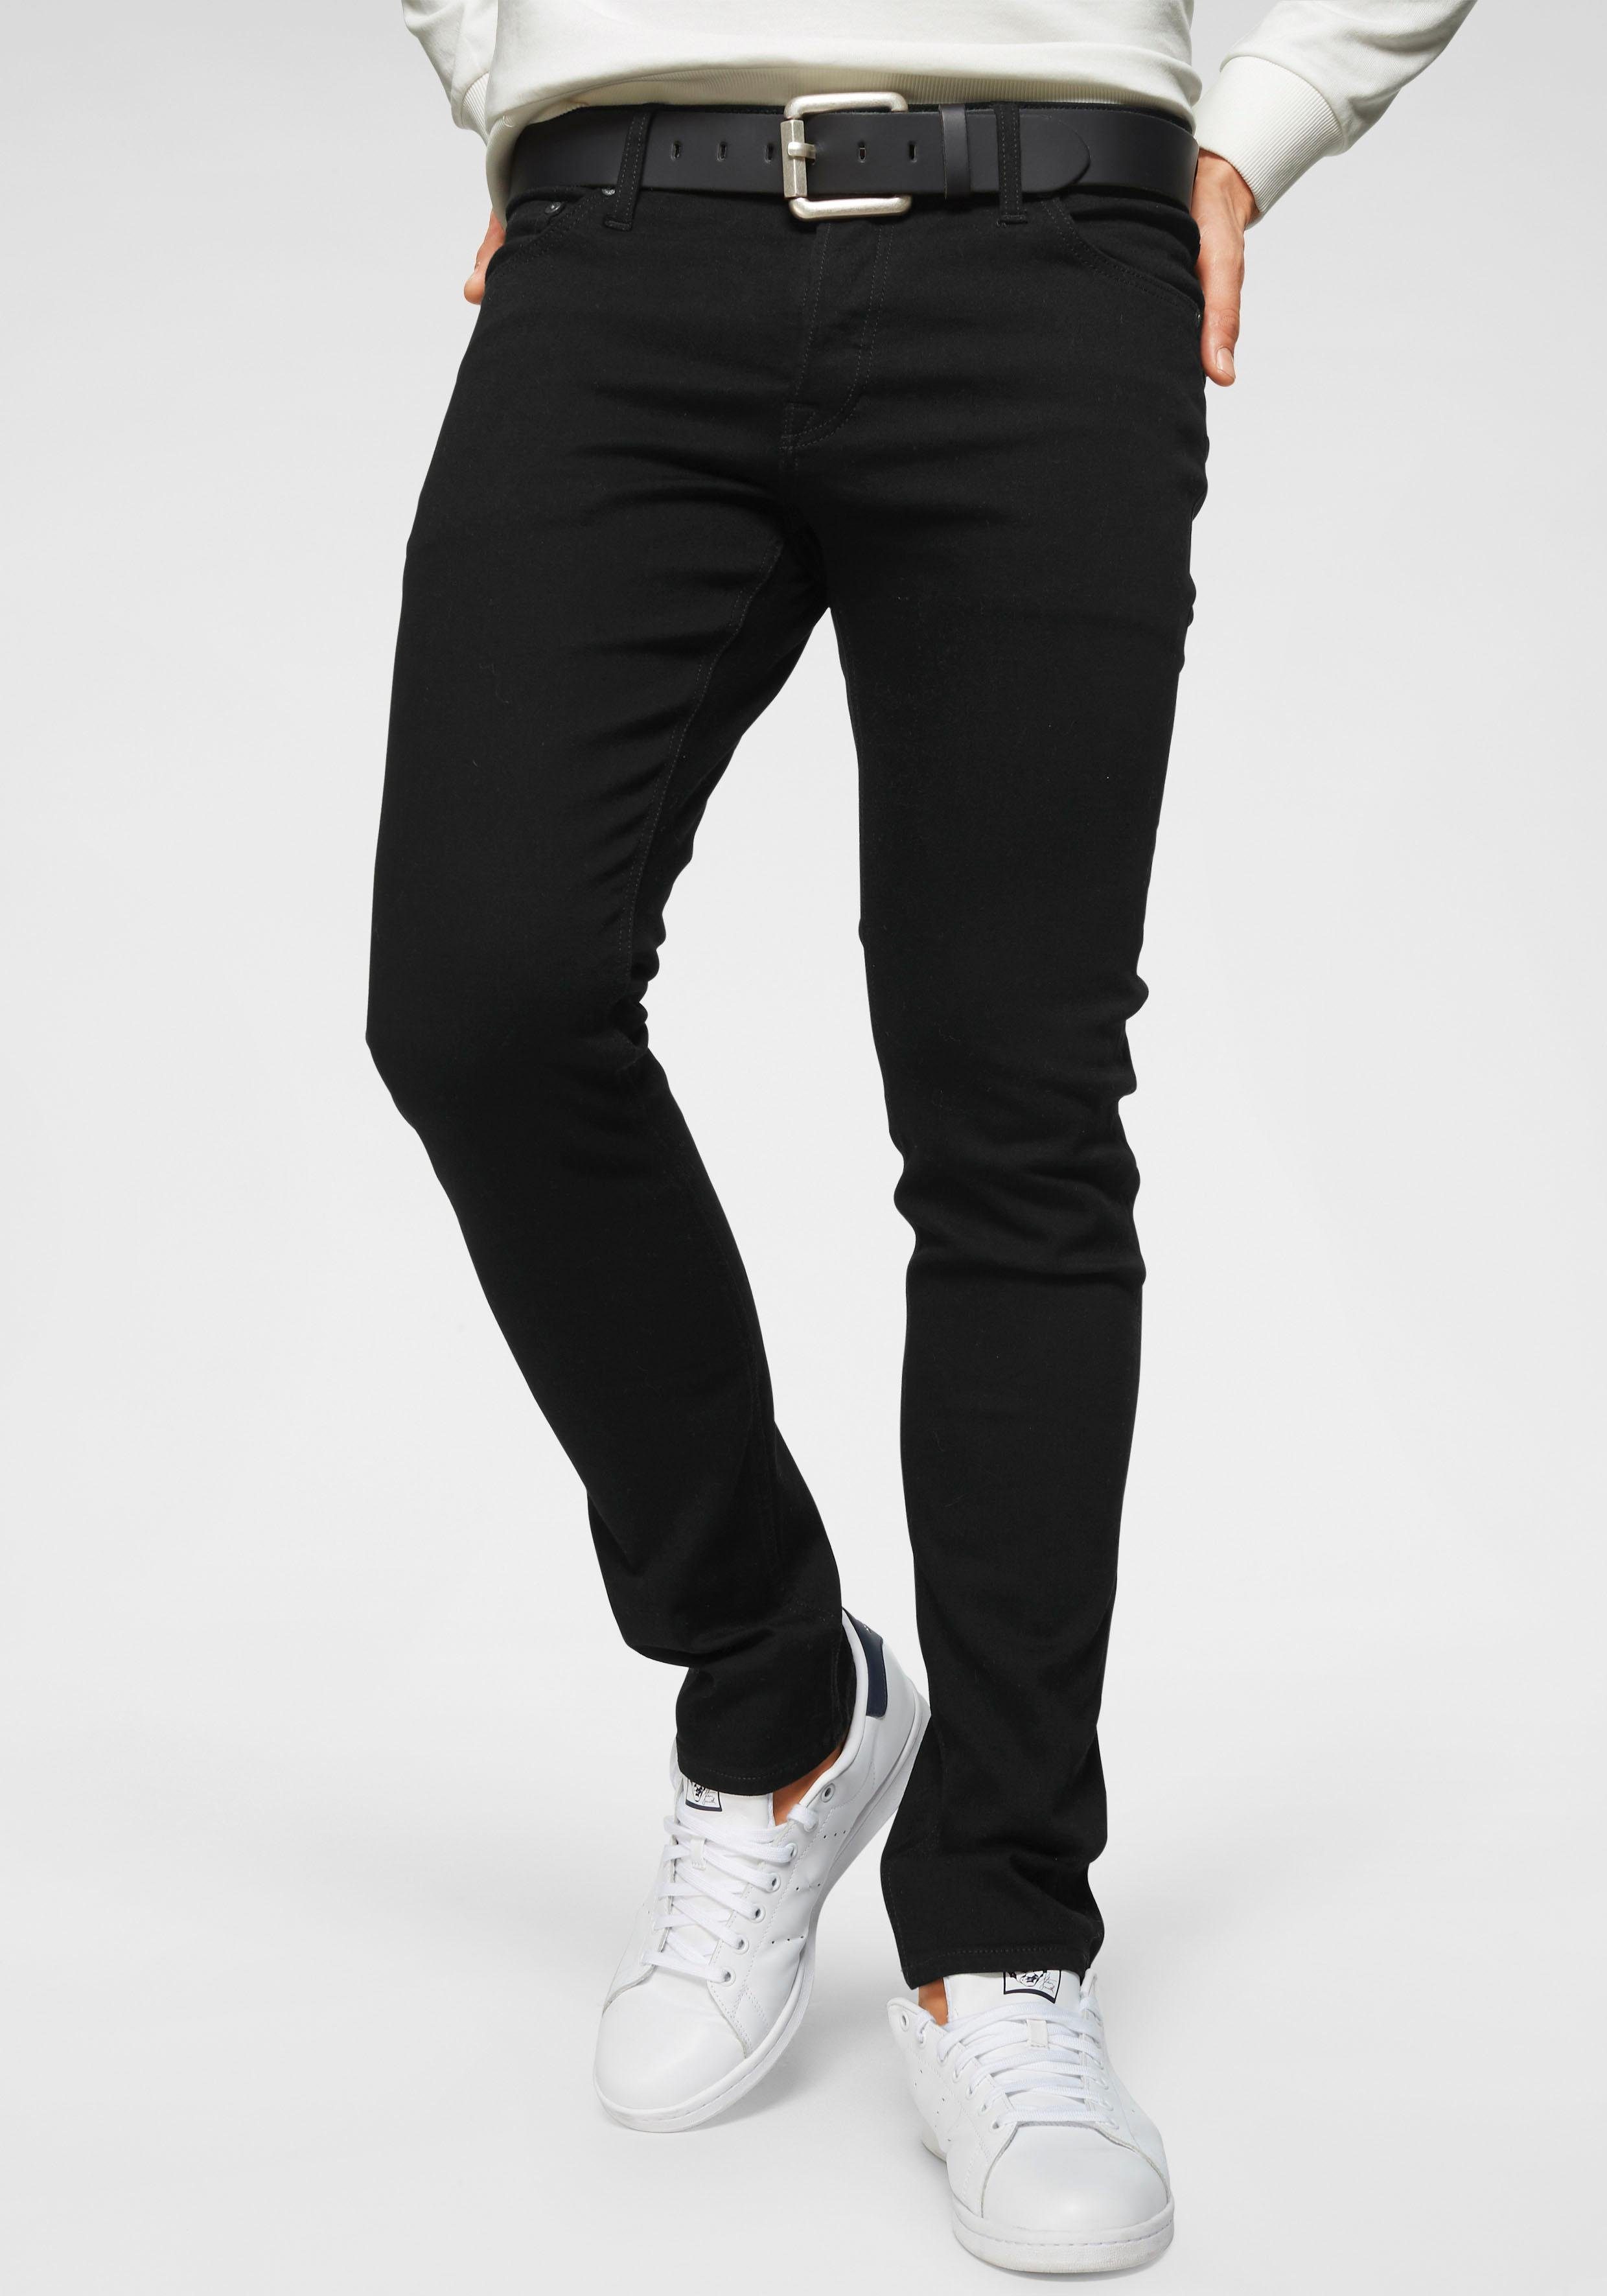 Schwarze Herren-Slim-Fit Jeans online kaufen | OTTO